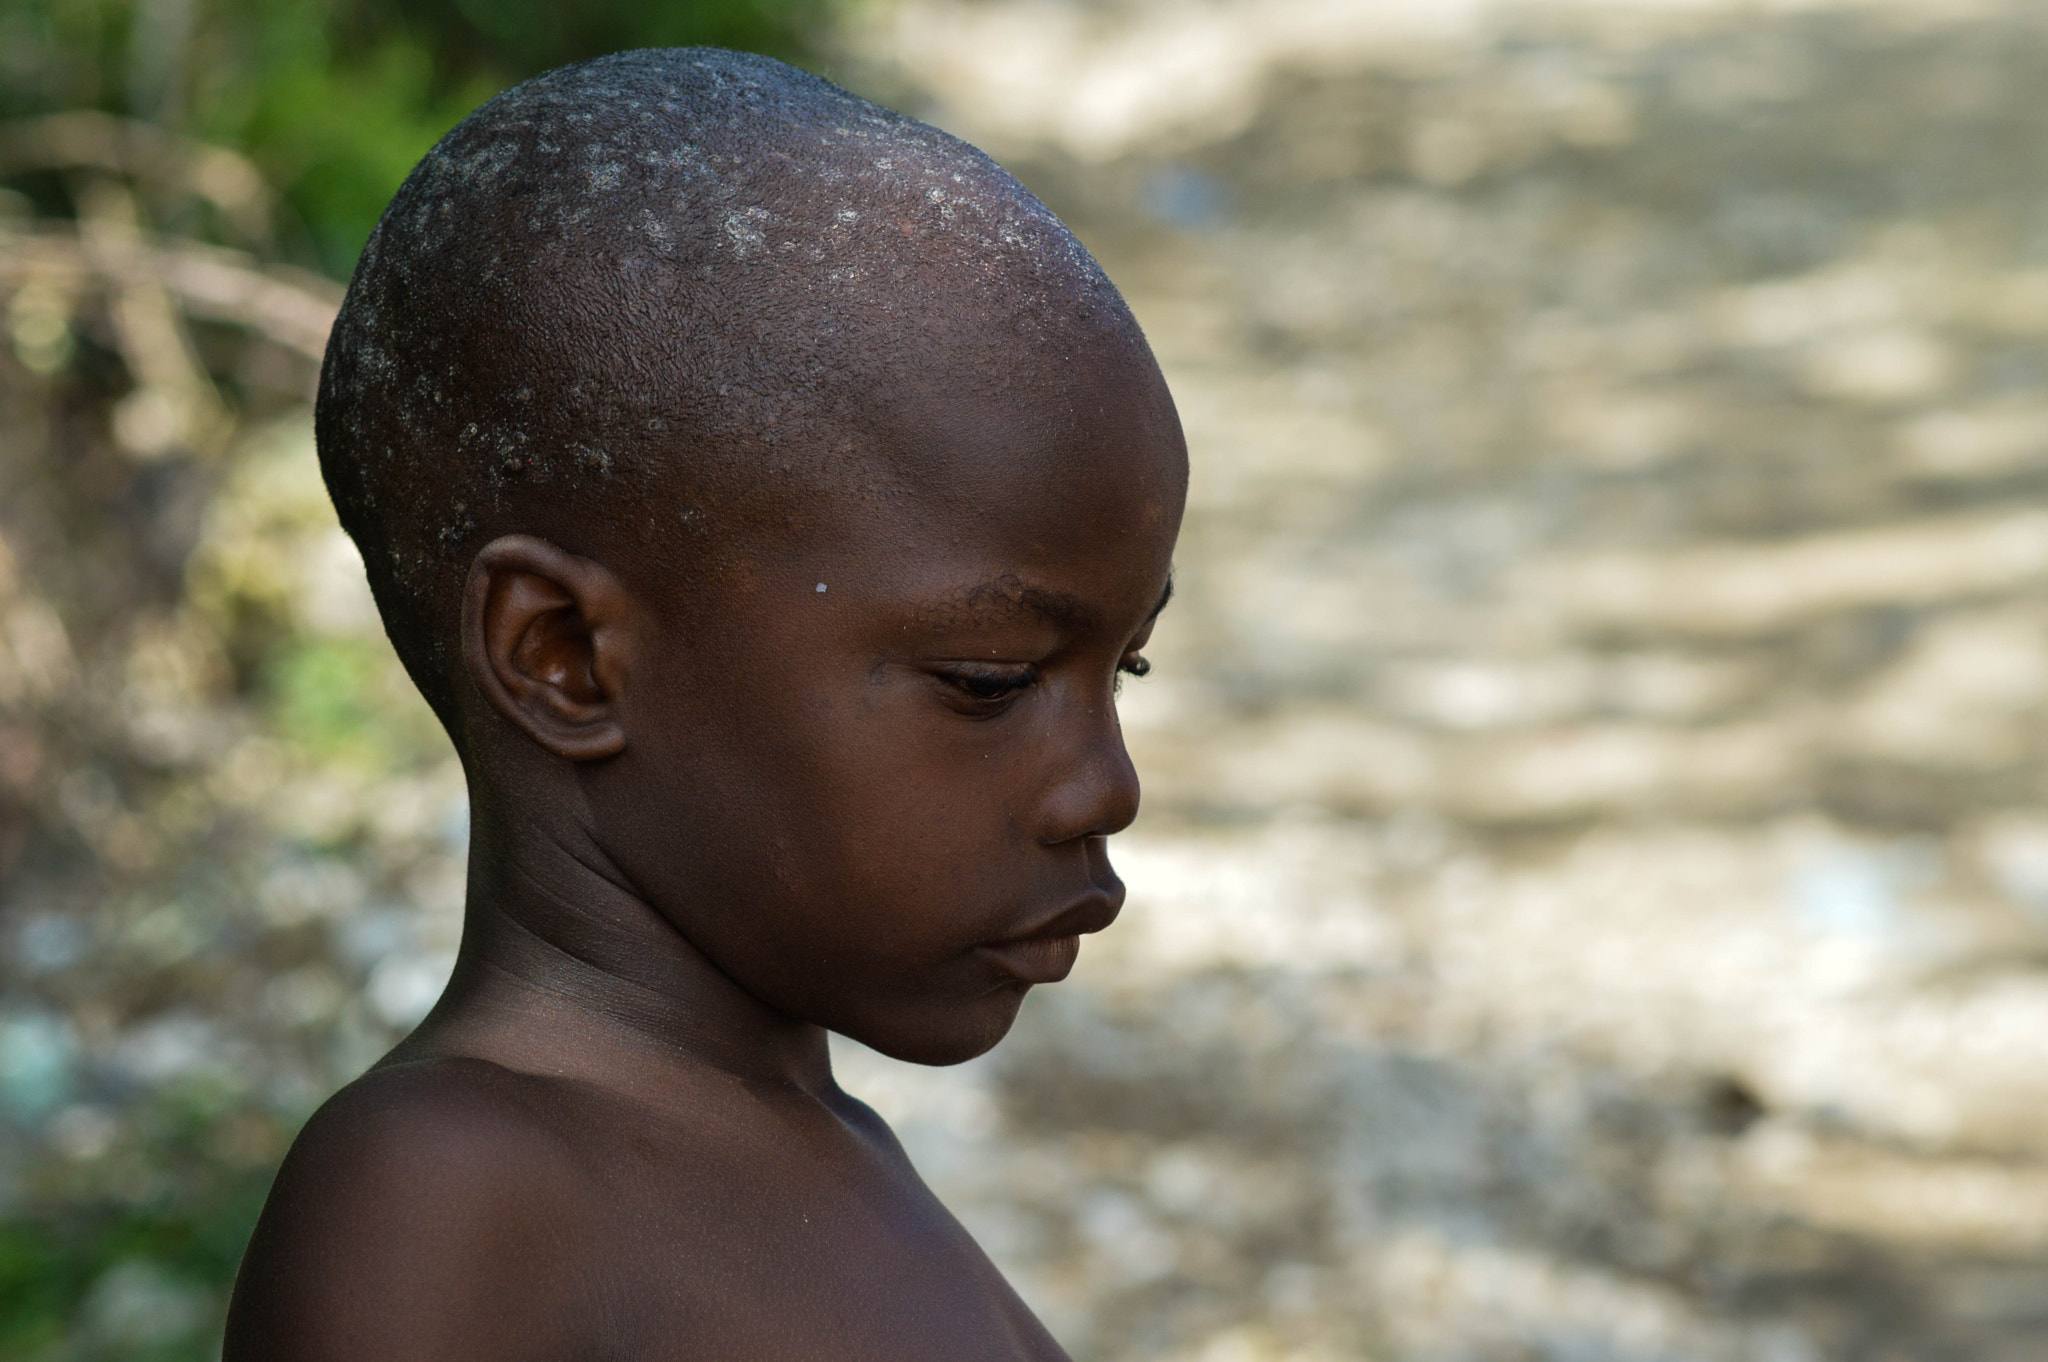 Nikon D3200 + Nikon AF-S Nikkor 85mm F1.8G sample photo. Haitian village child photography